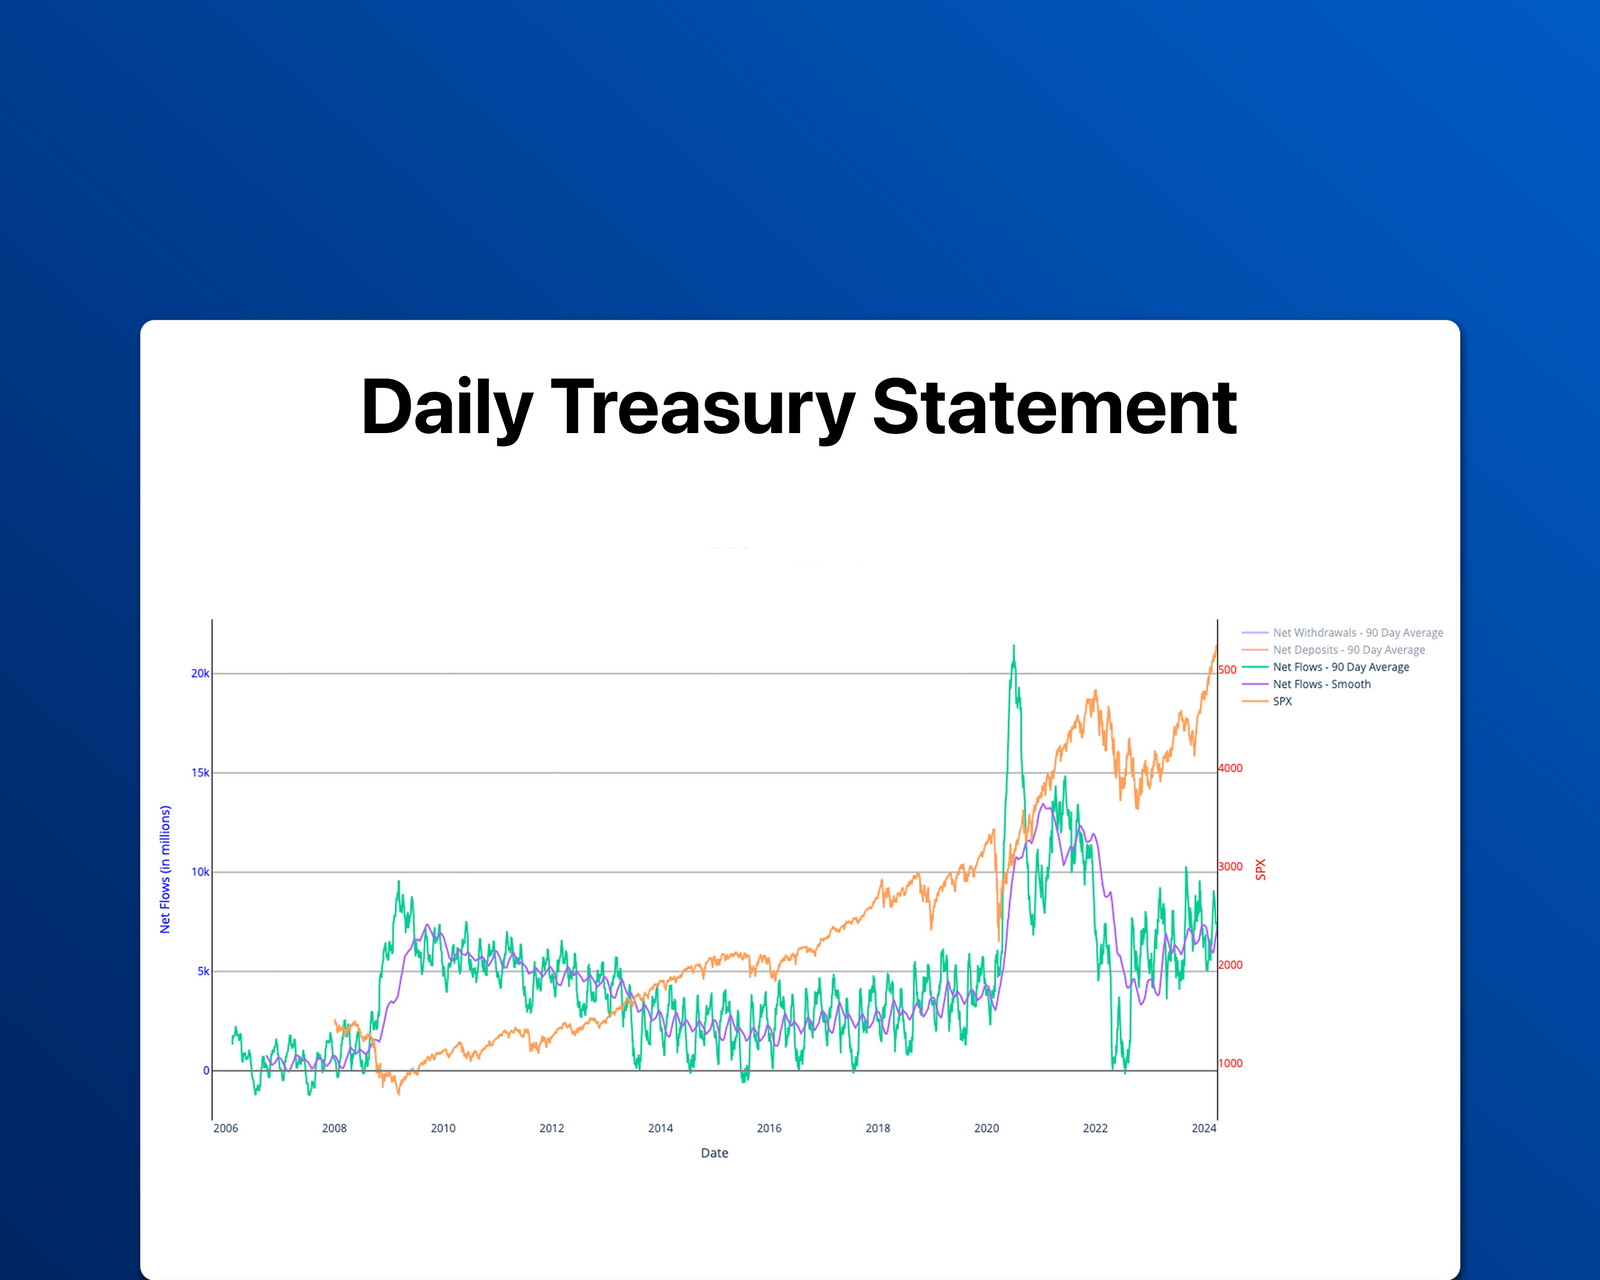 Daily Treasury Statement Data